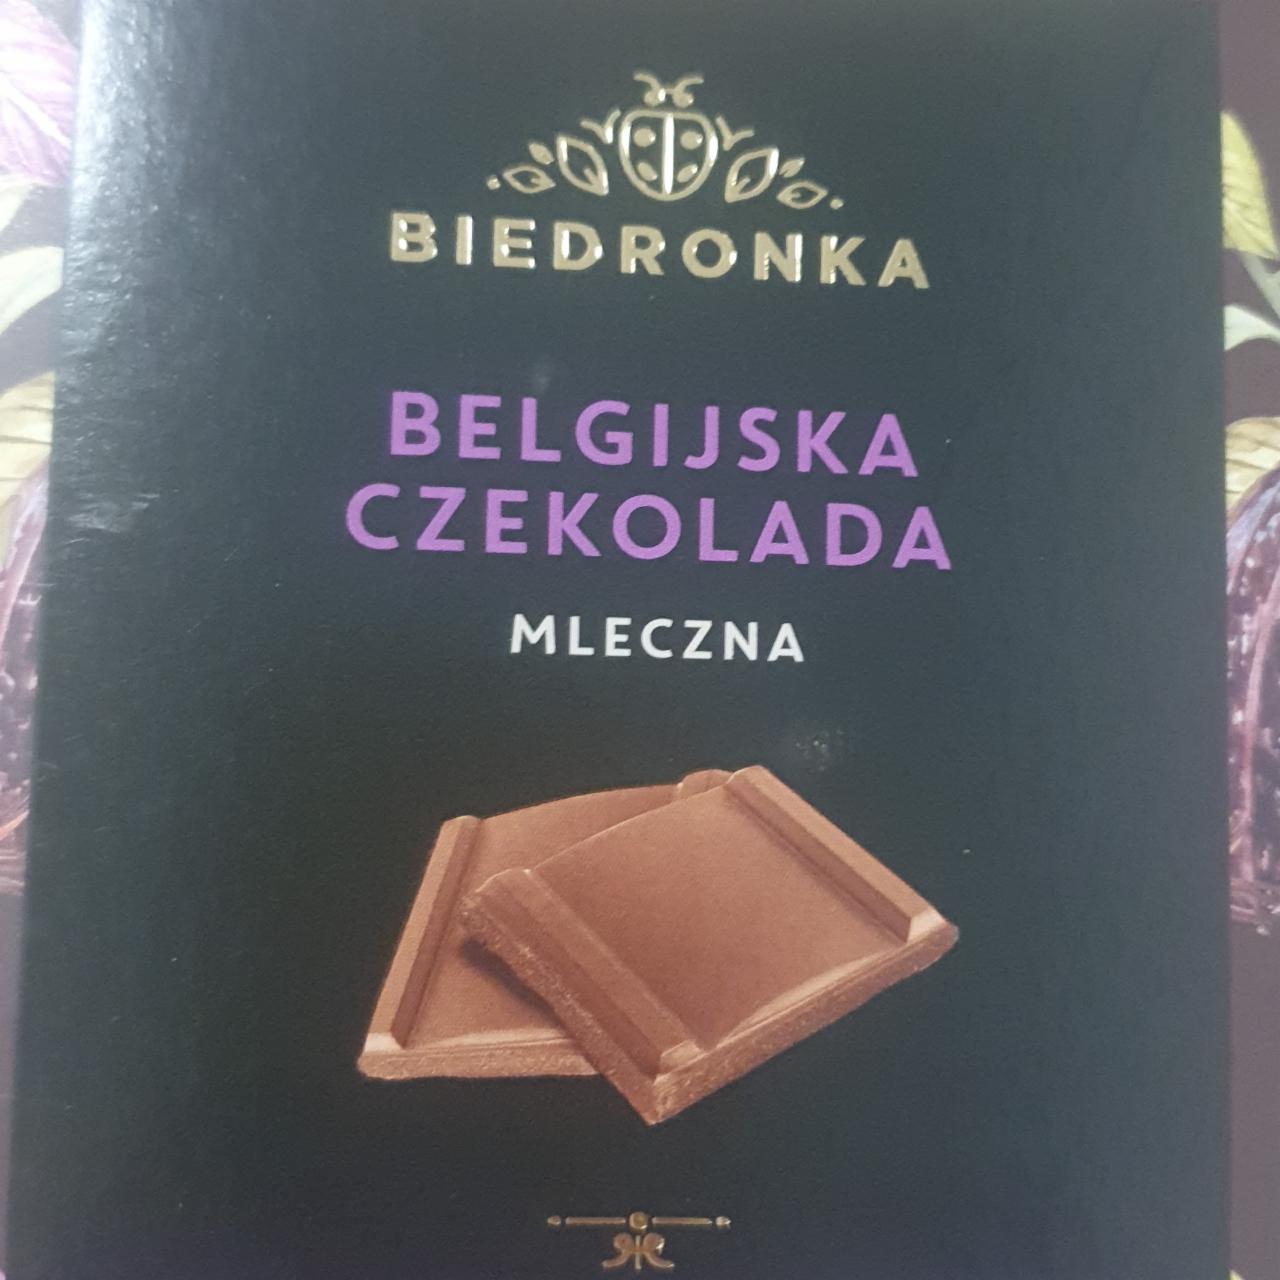 Фото - бельгийский шоколад молочный Biedronka